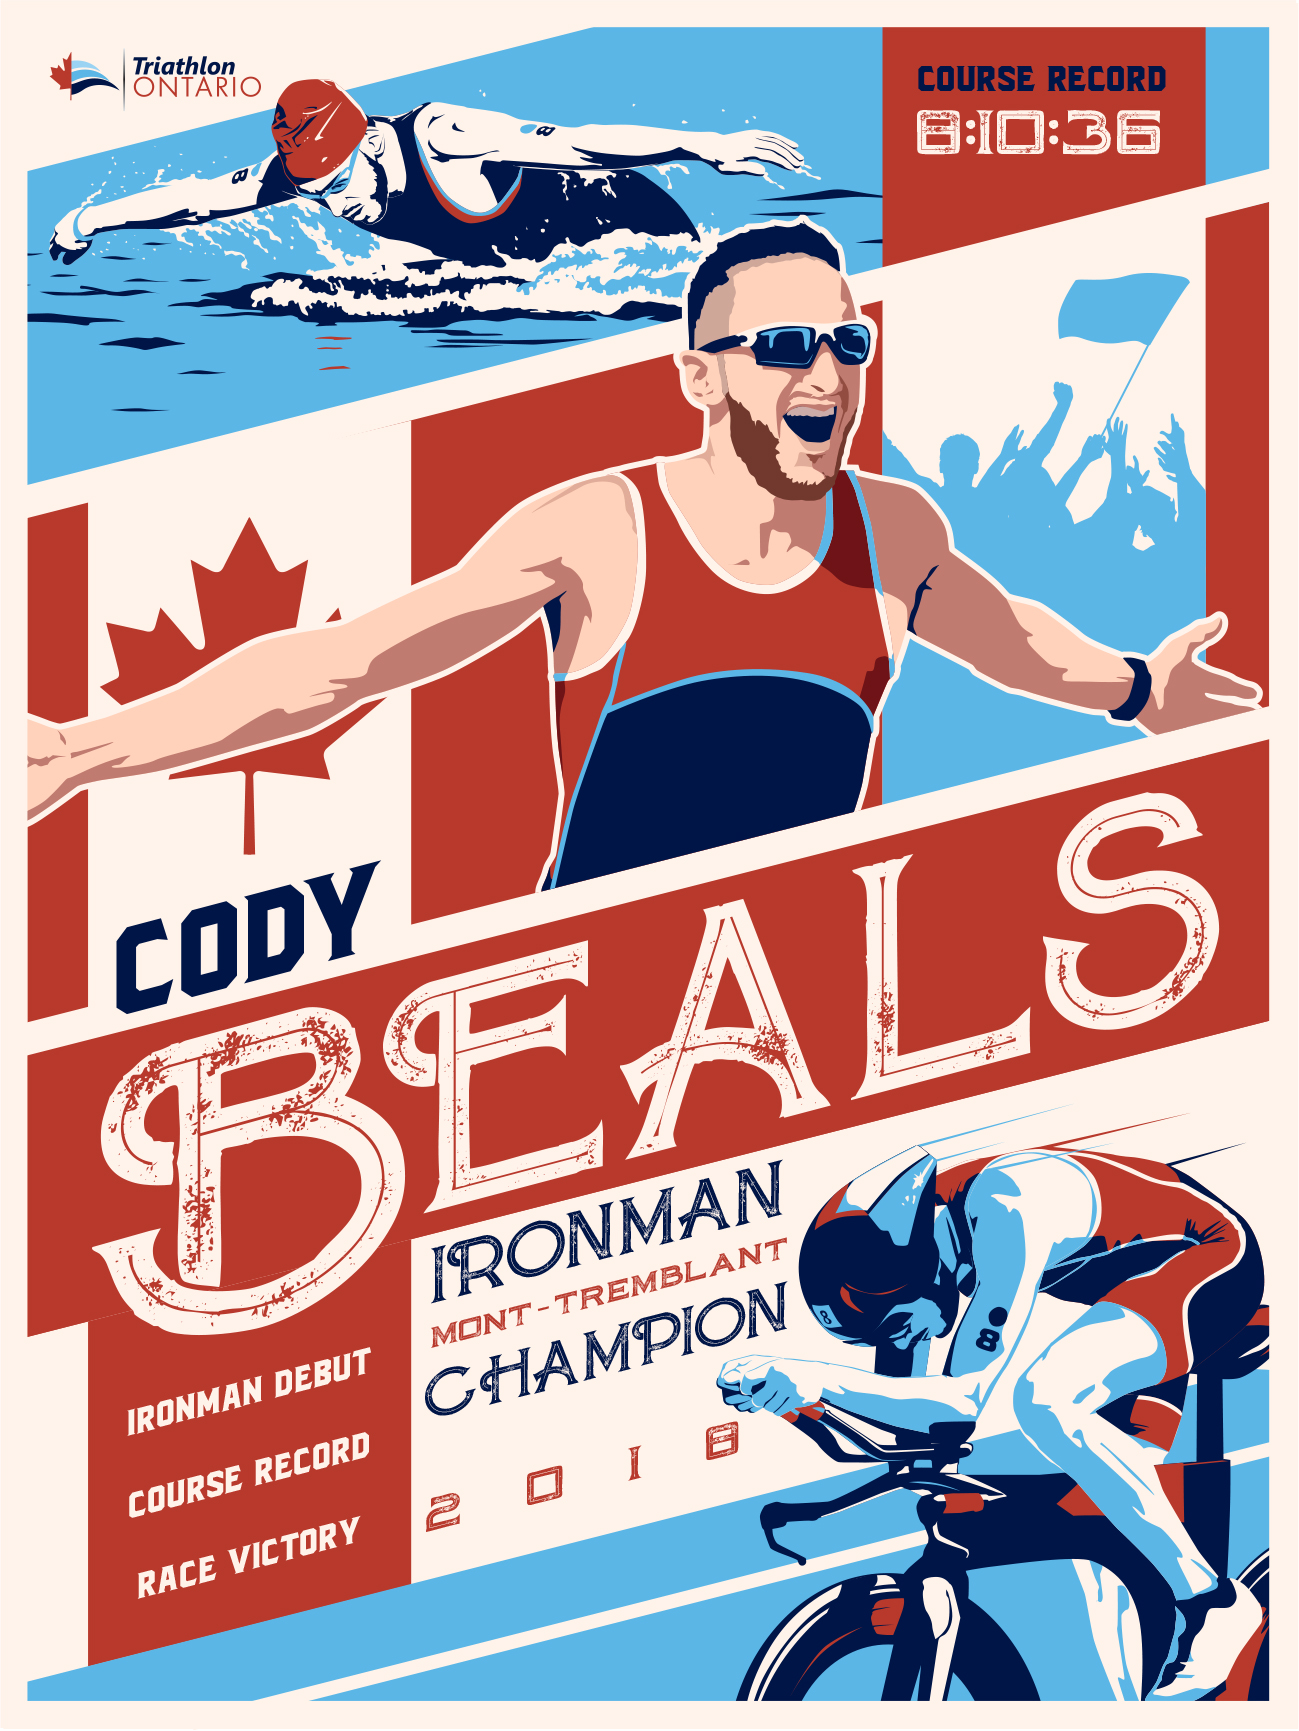 New Poster Ontario Athletes – Triathlon